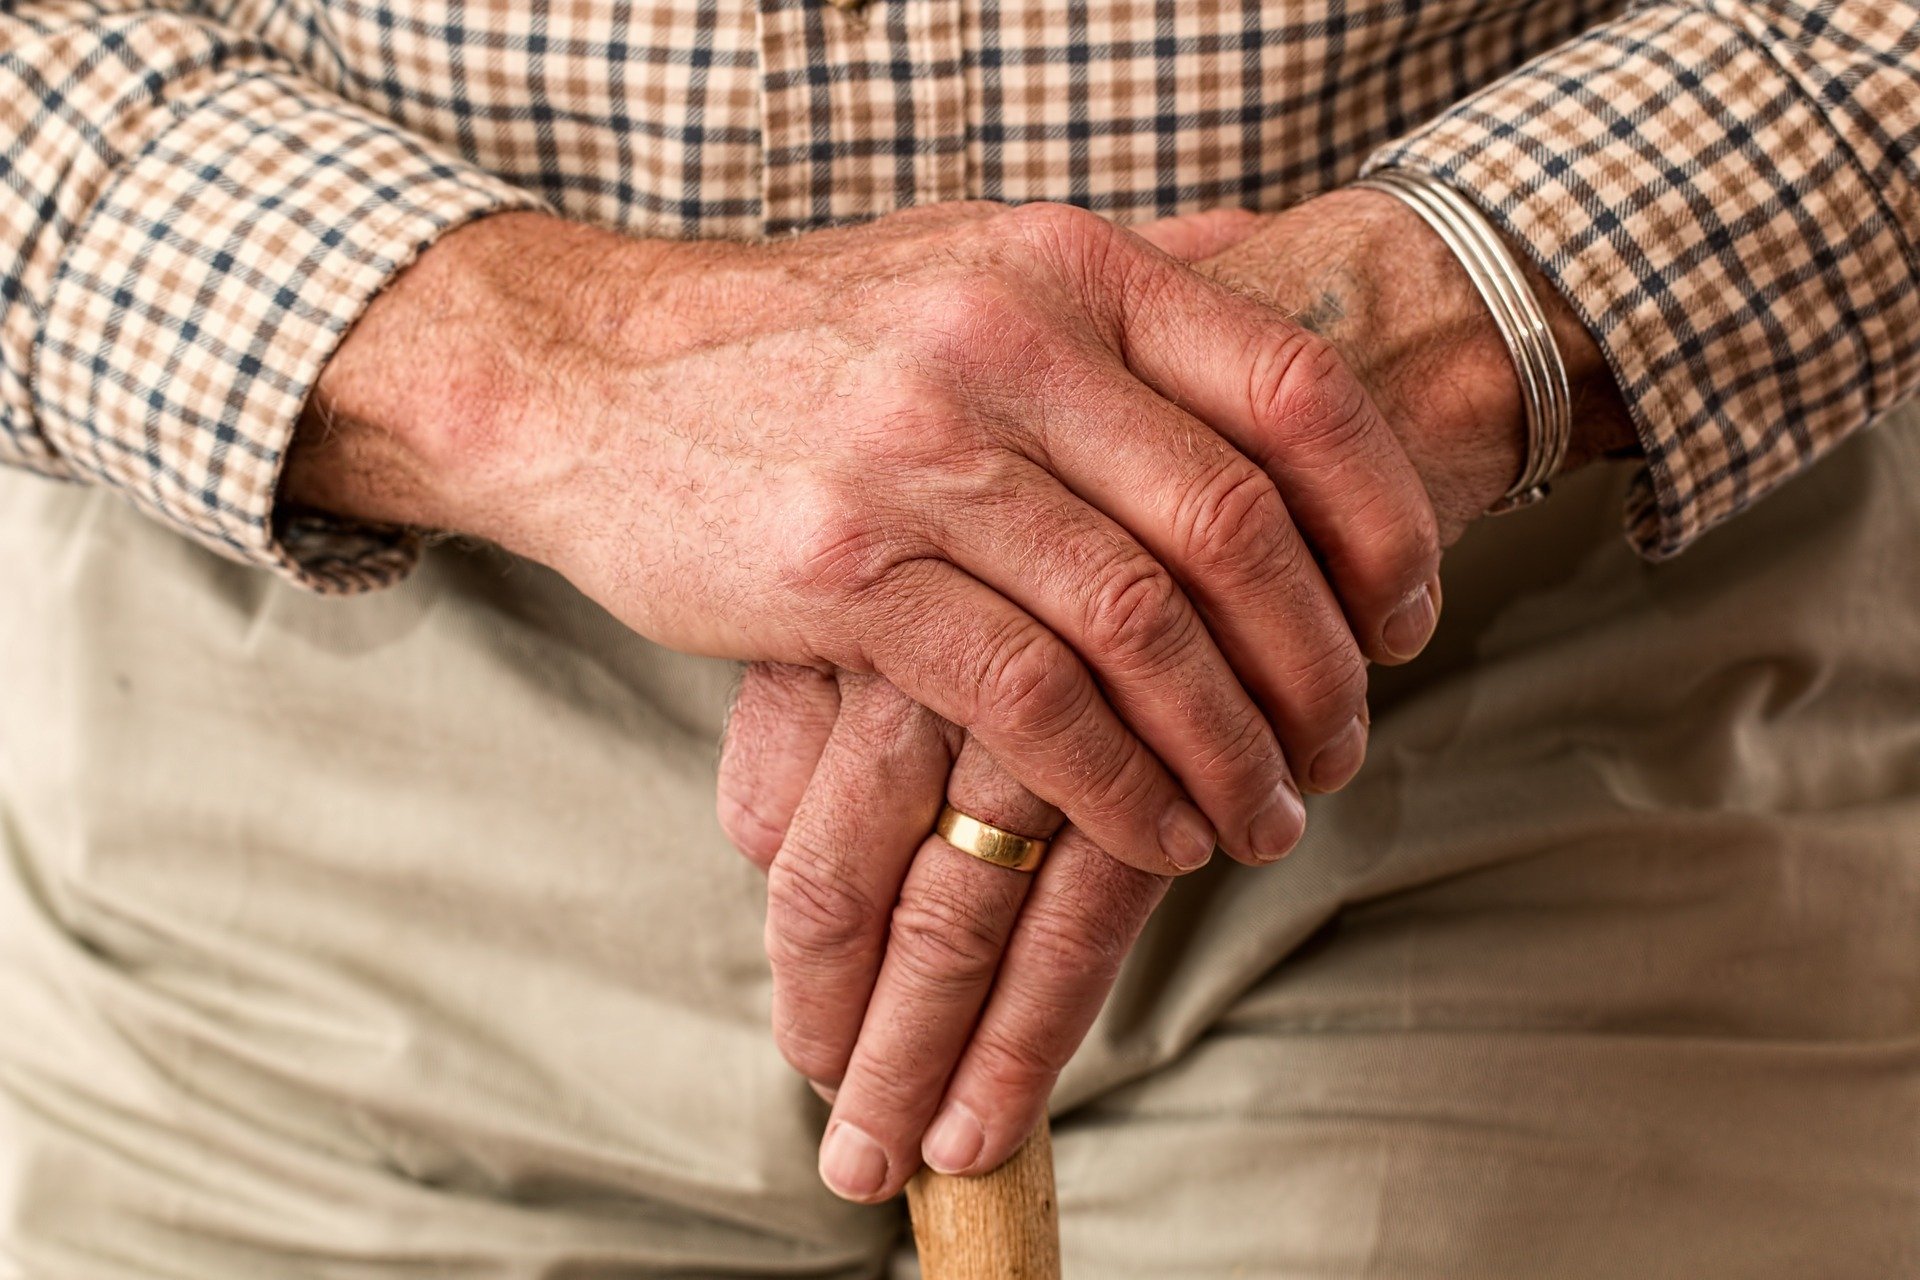 Beaucoup de fraudeurs visent les seniors, particulièrement vulnérables.